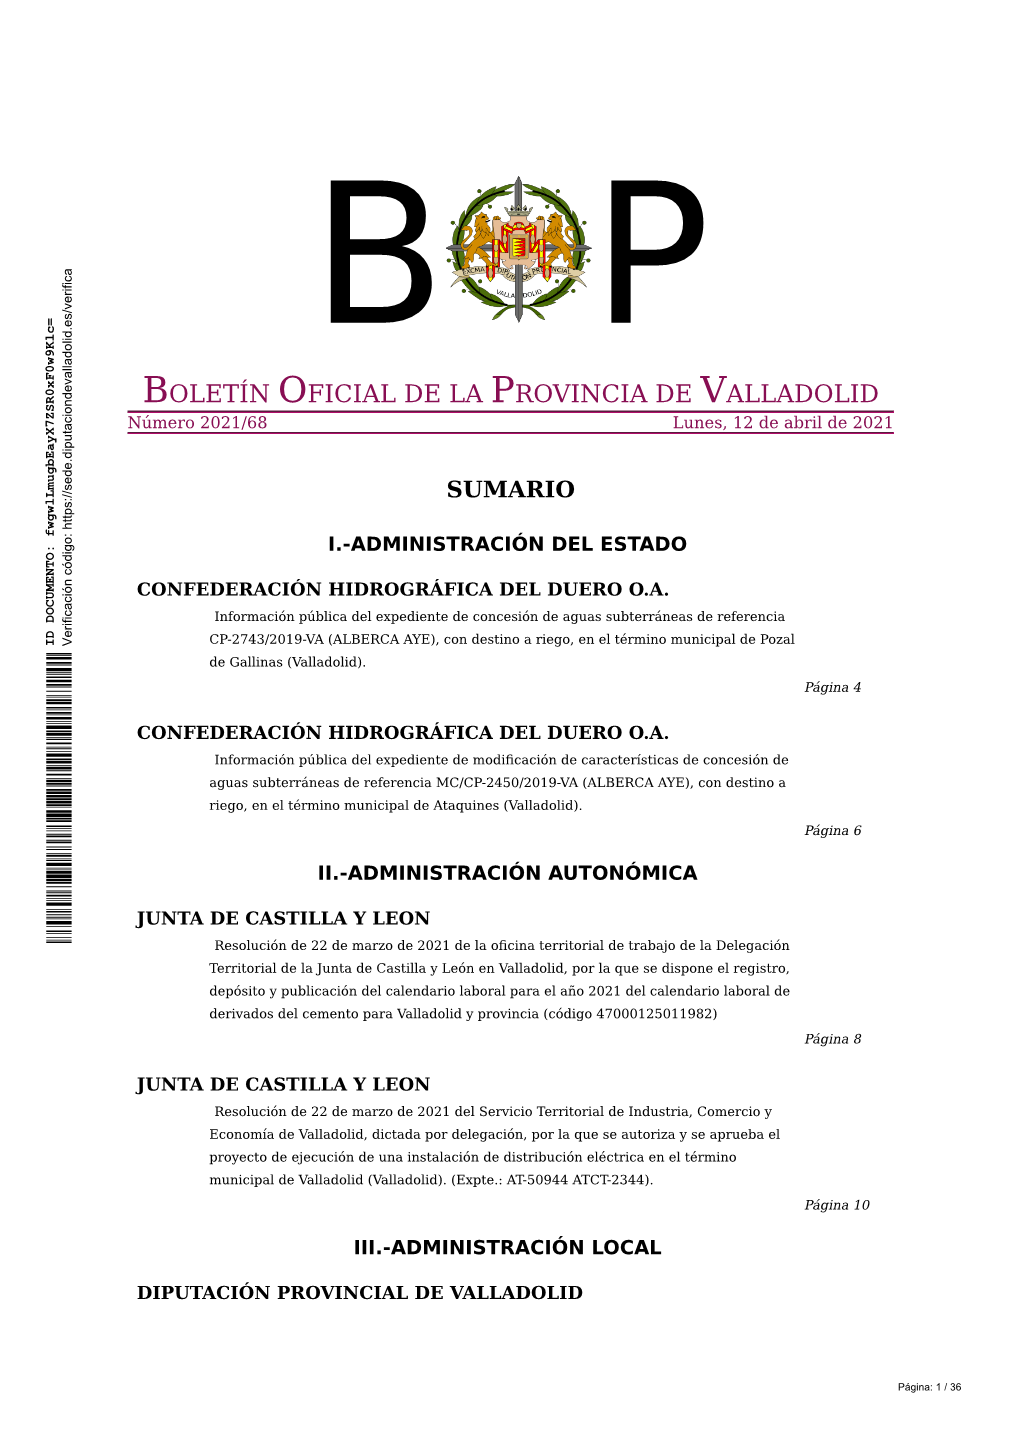 BOLETÍN OFICIAL DE LA PROVINCIA DE VALLADOLID Número 2021/68 Lunes, 12 De Abril De 2021